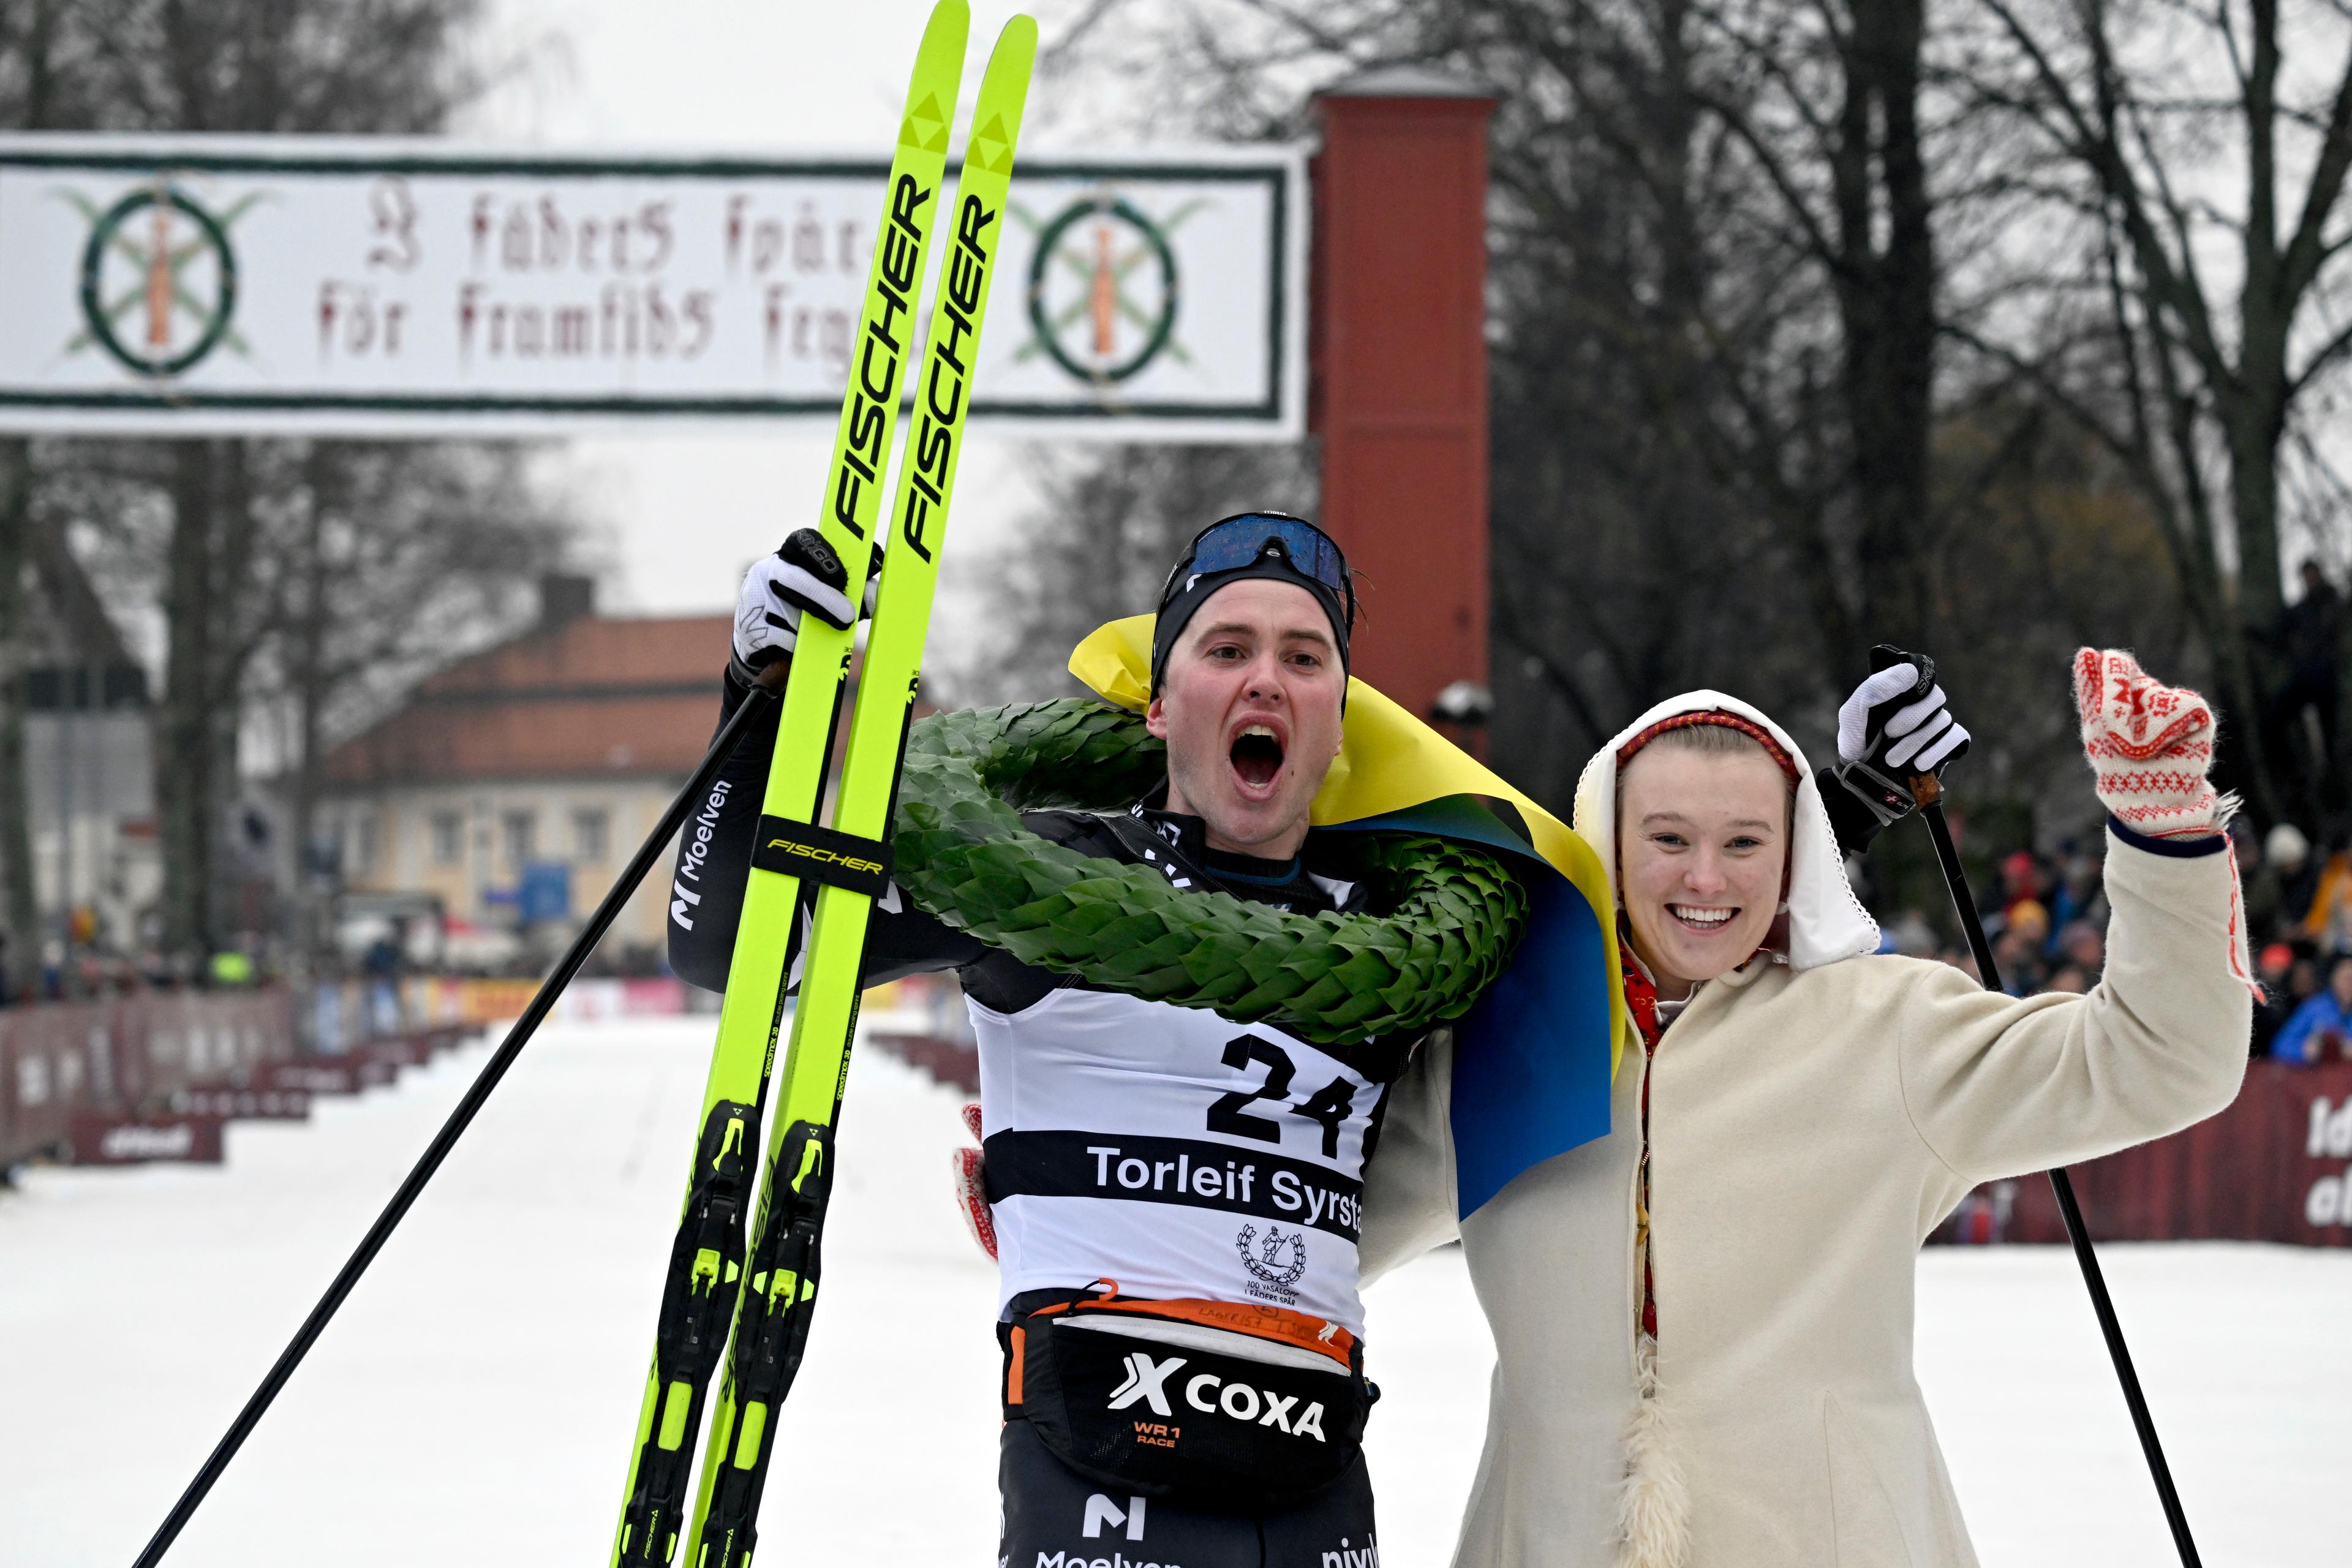 Två män åtalas efter att de sprungit in i Vasaloppsspåret framför den blivande vinnaren Torleif Syrstad. Arkivbild. Foto: Ulf Palm/TT